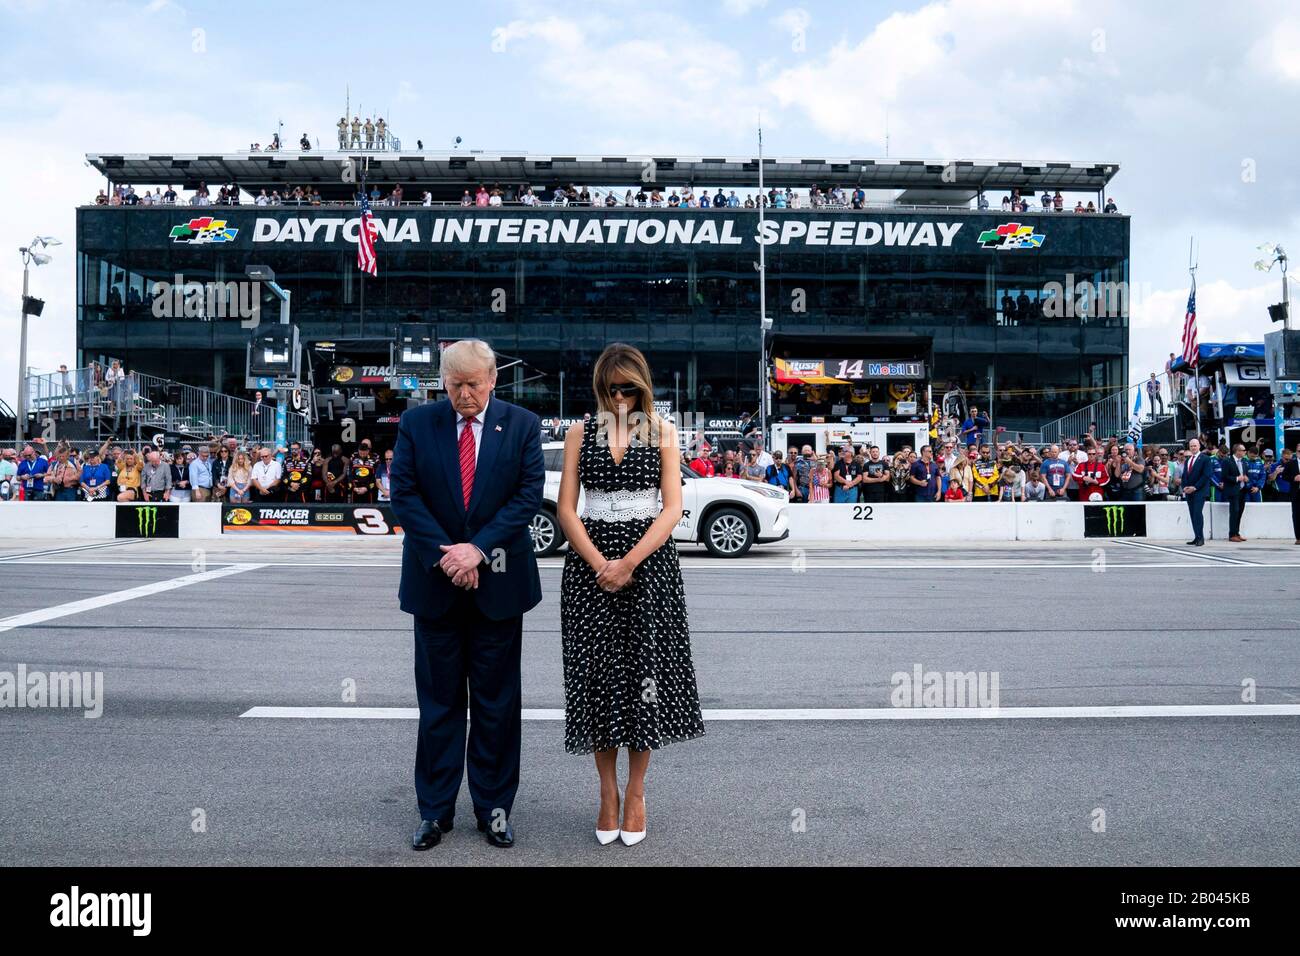 El presidente estadounidense Donald Trump y La Primera dama Melania Trump, se levantan para la oración de apertura en Daytona International Speedway el 16 de febrero de 2020 en Daytona Beach, Florida. Trump sirvió como el comienzo oficial de la carrera automovilística NASCAR Daytona 500 y tomó un paseo en la limusina presidencial alrededor de la pista. Foto de stock